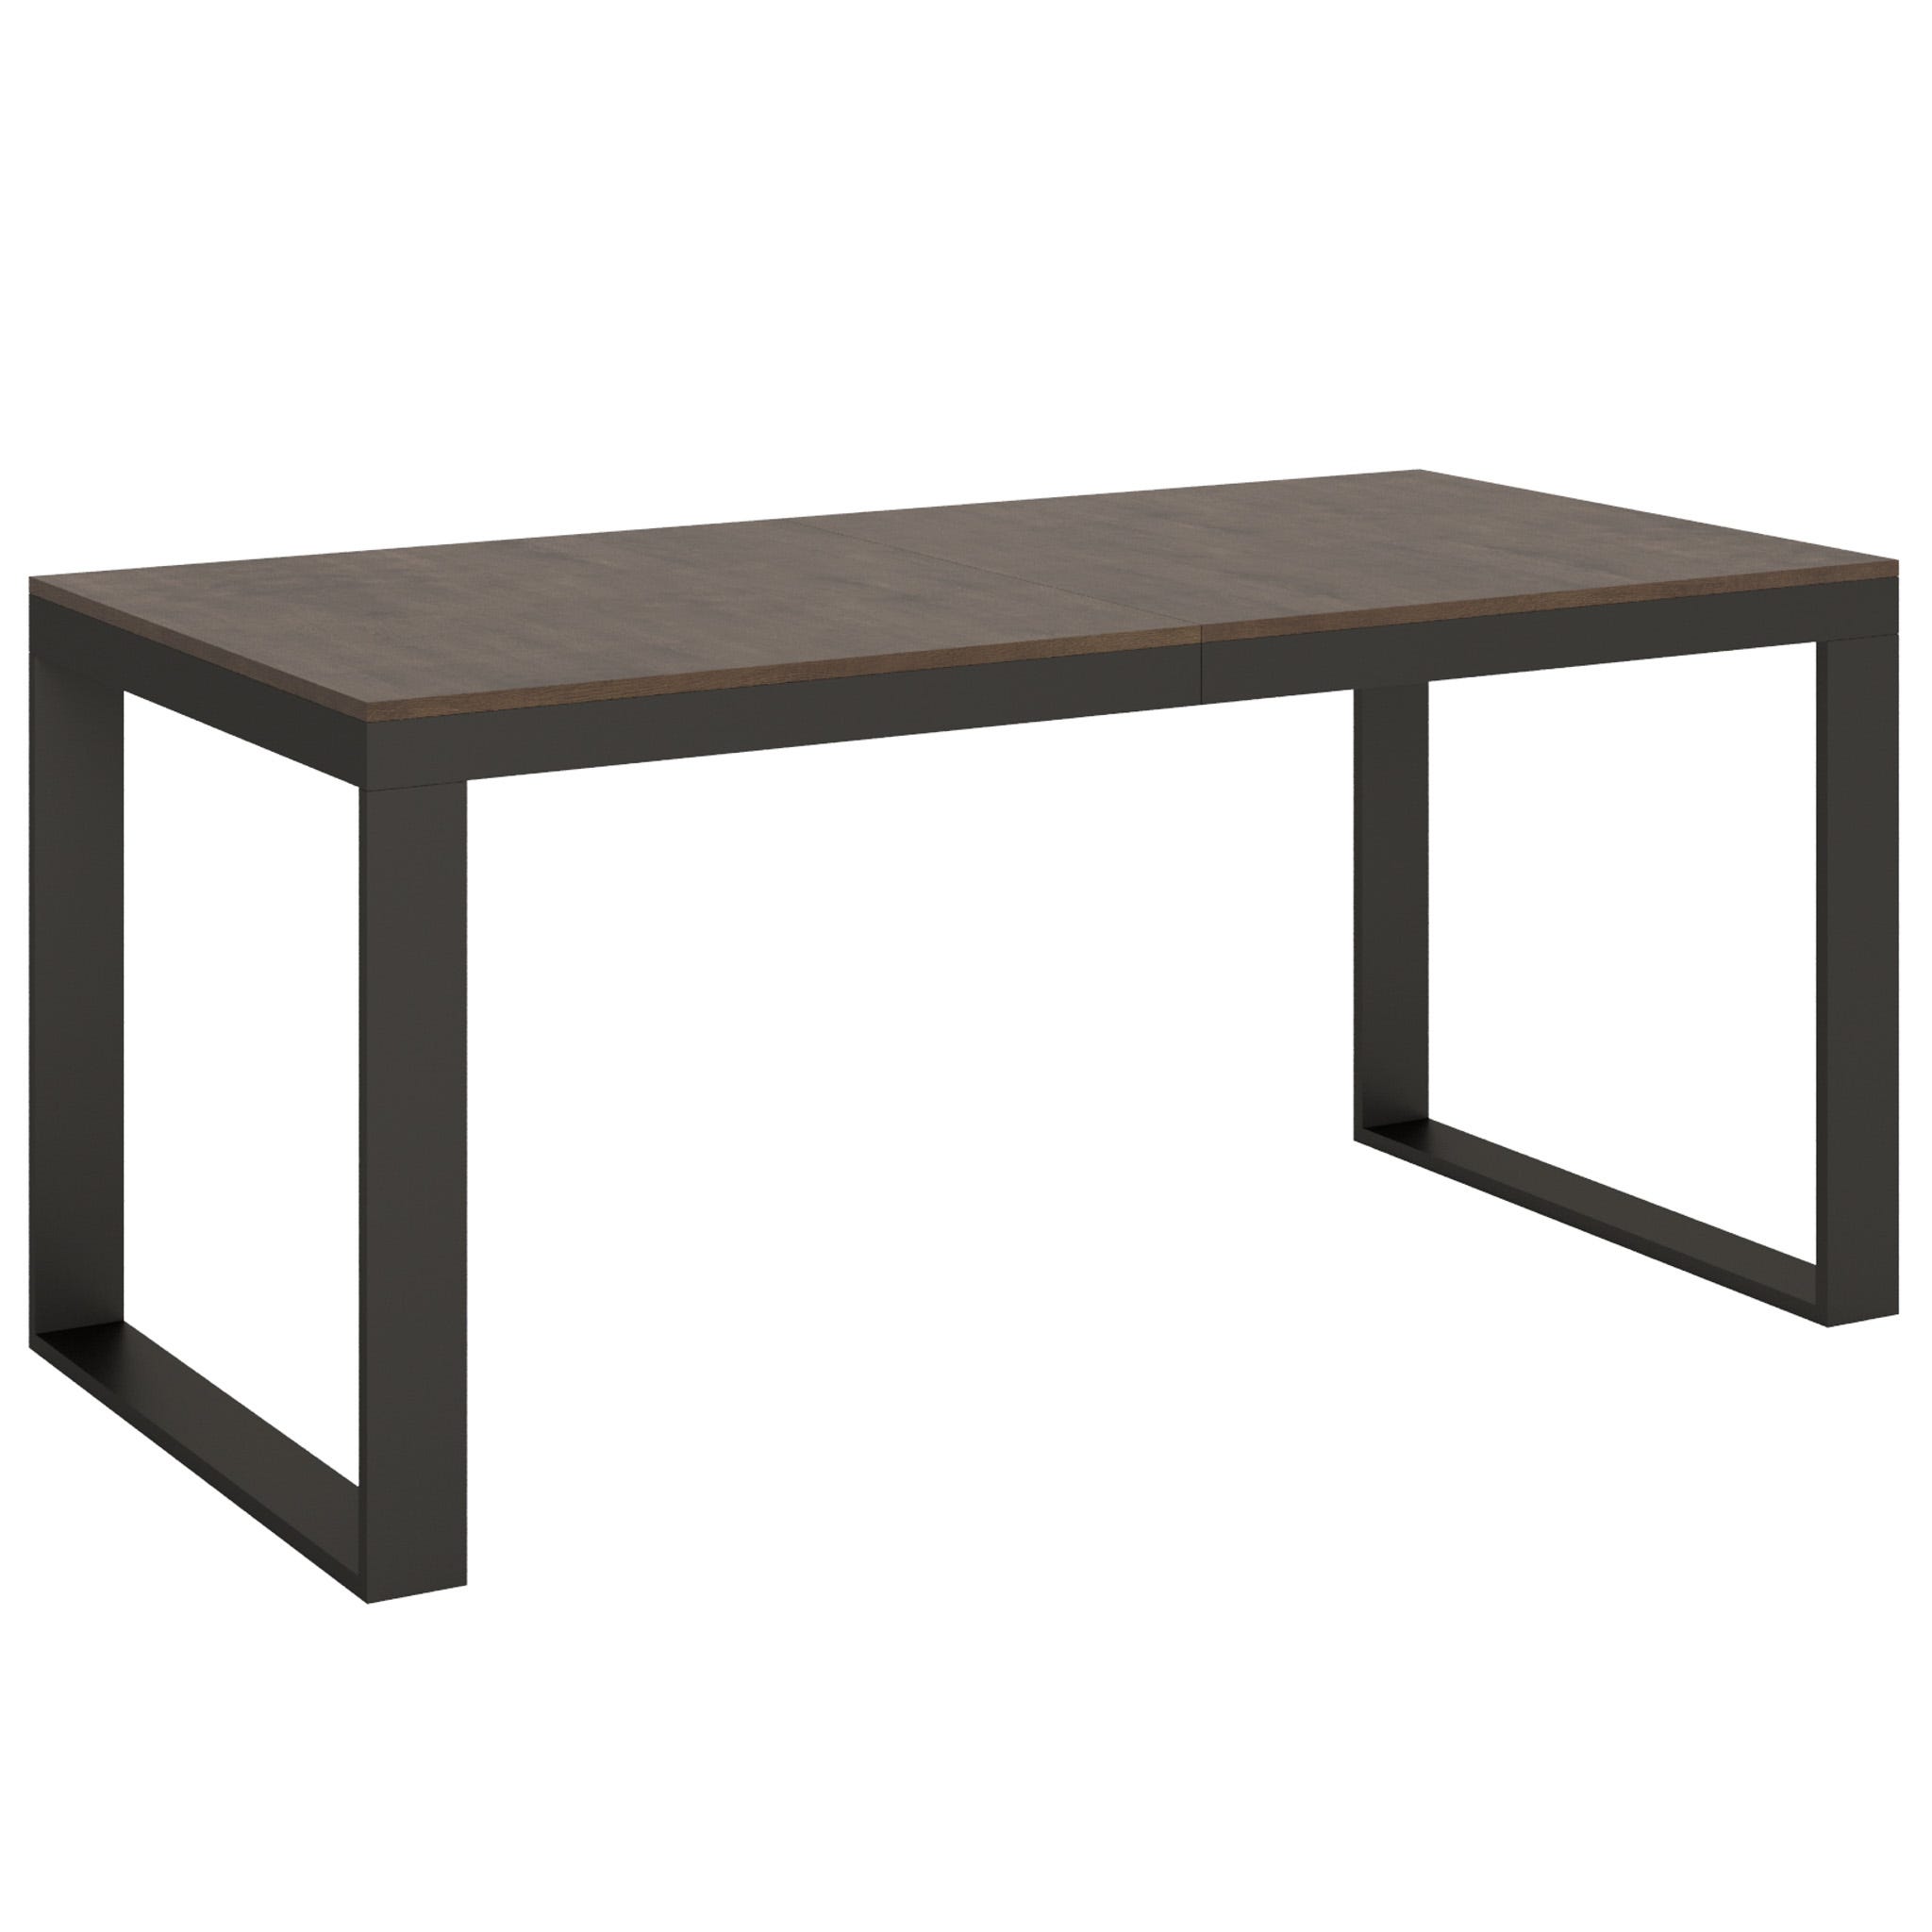 Mesa de comedor diseño extensible blanca patas madera L180-260